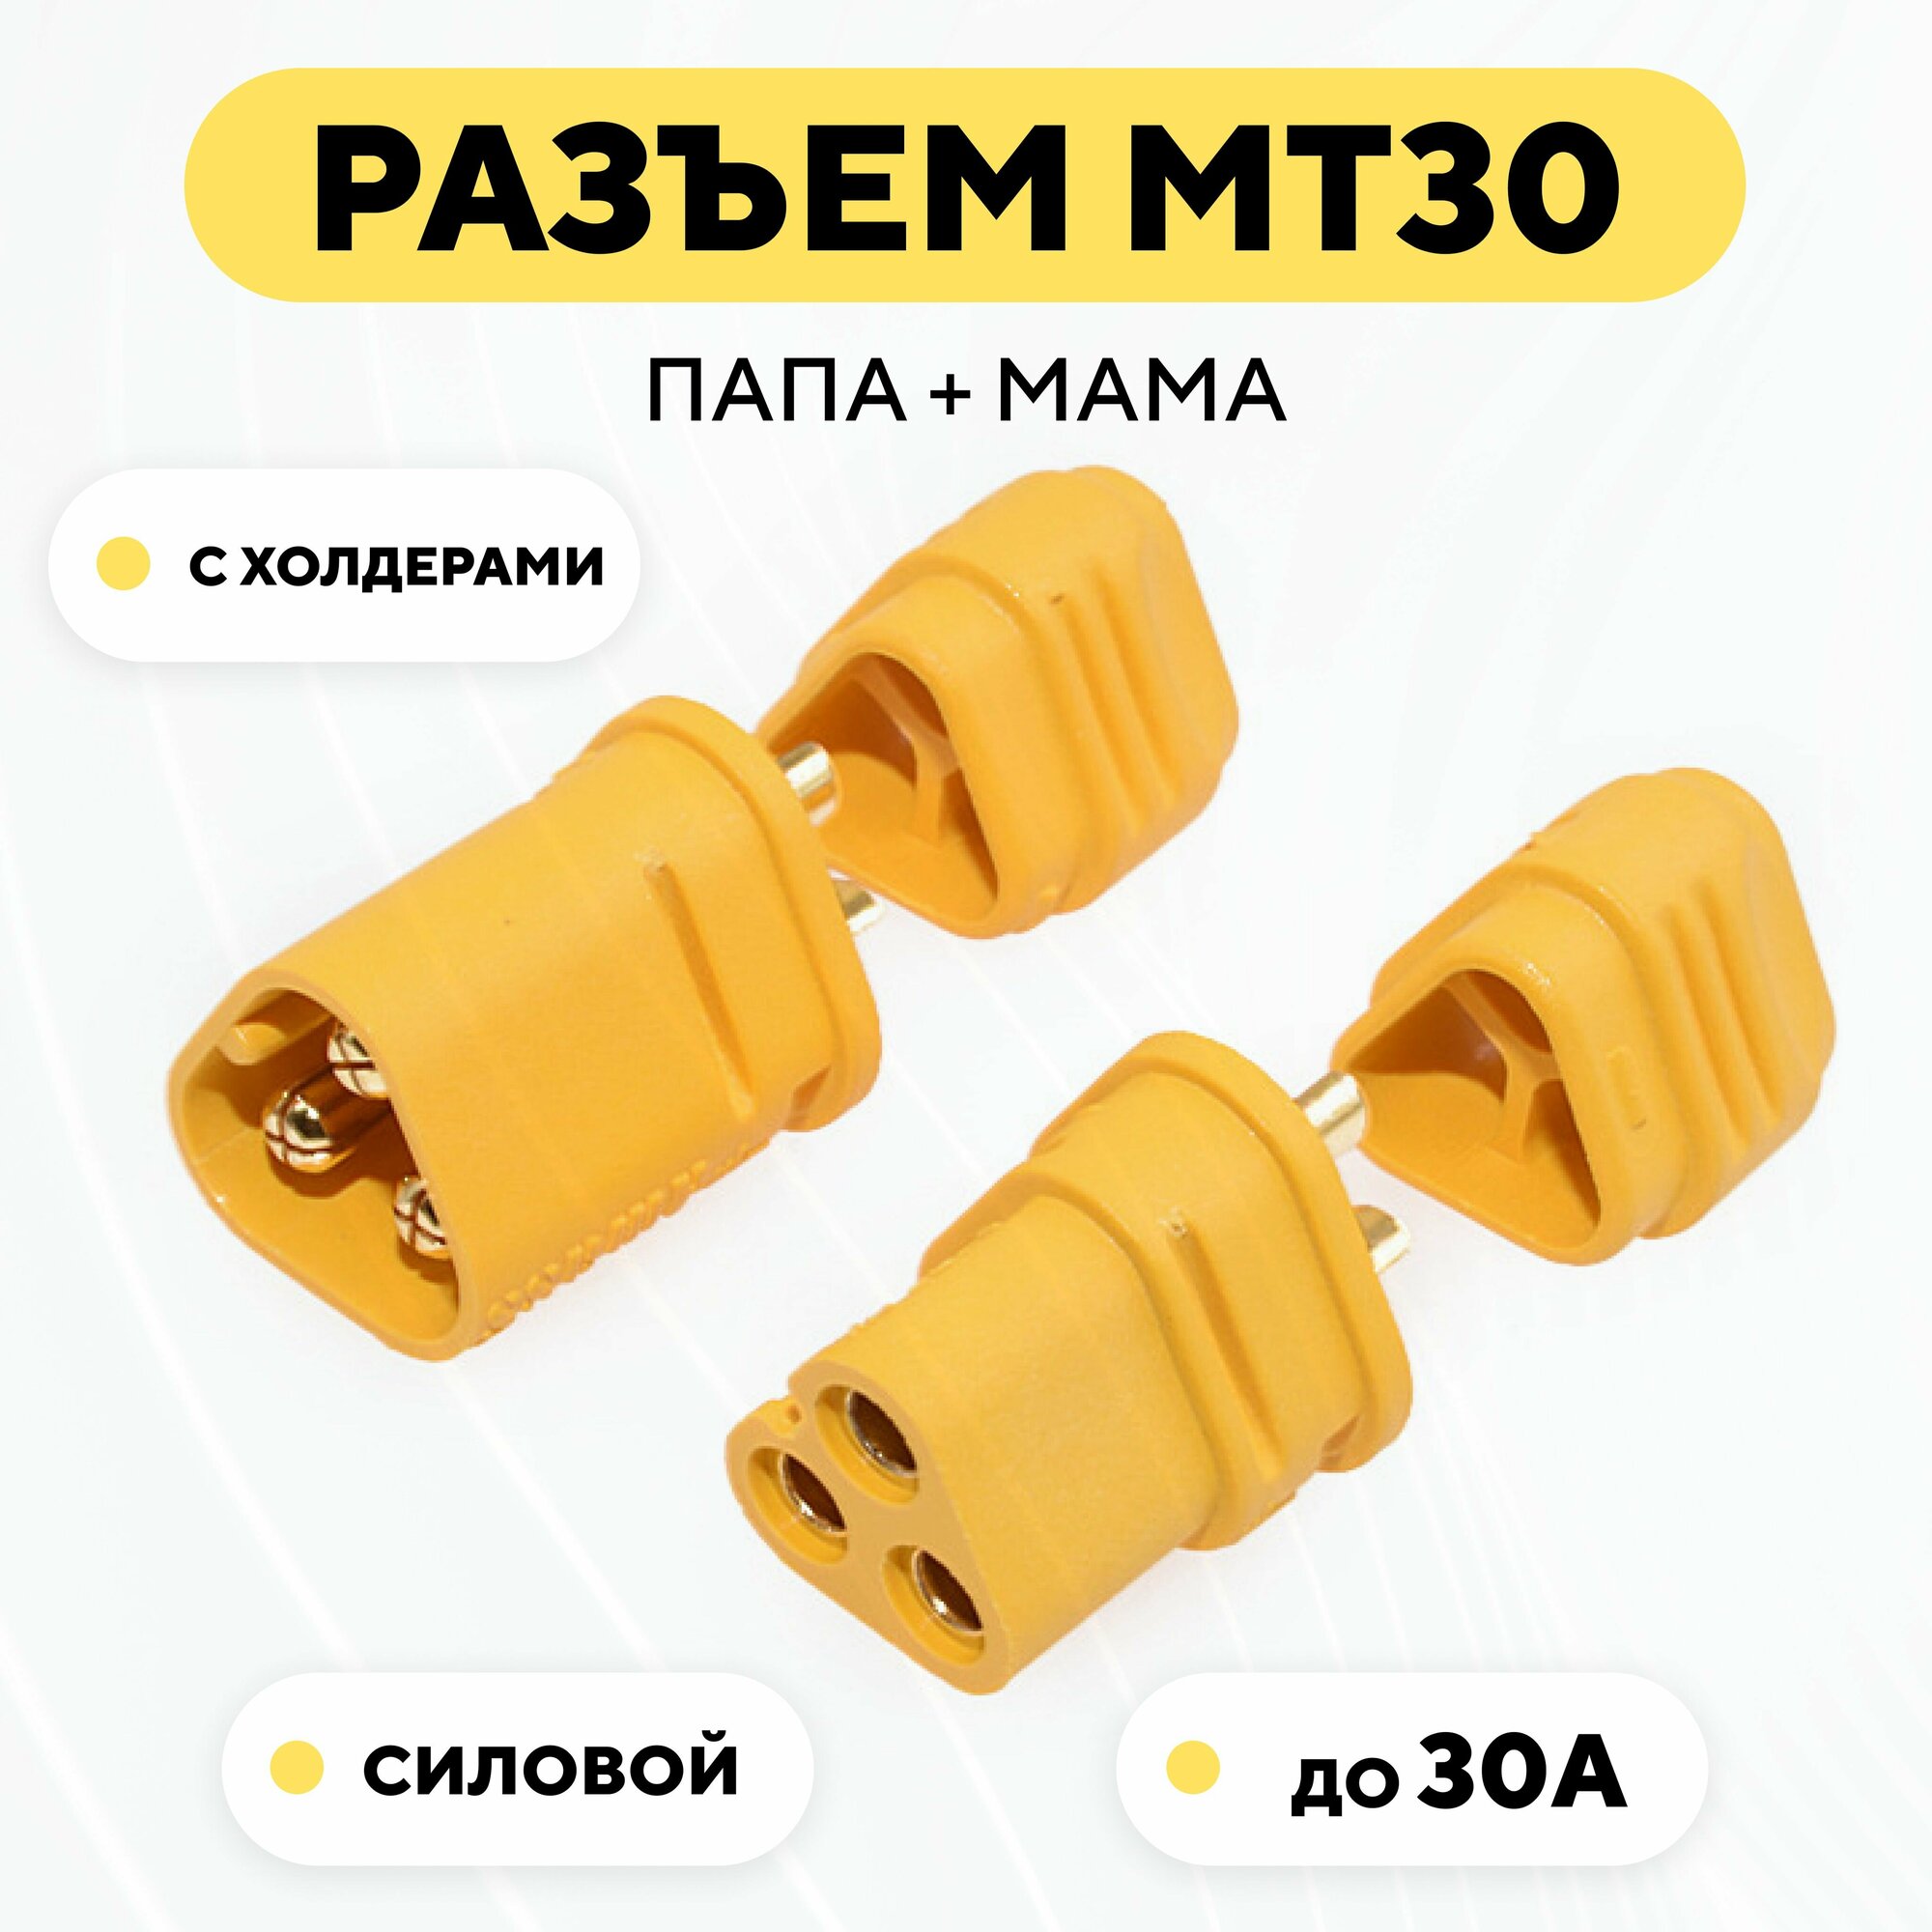 Силовой разъем MT30 коннектор питания мама + папа (штекер + гнездо)